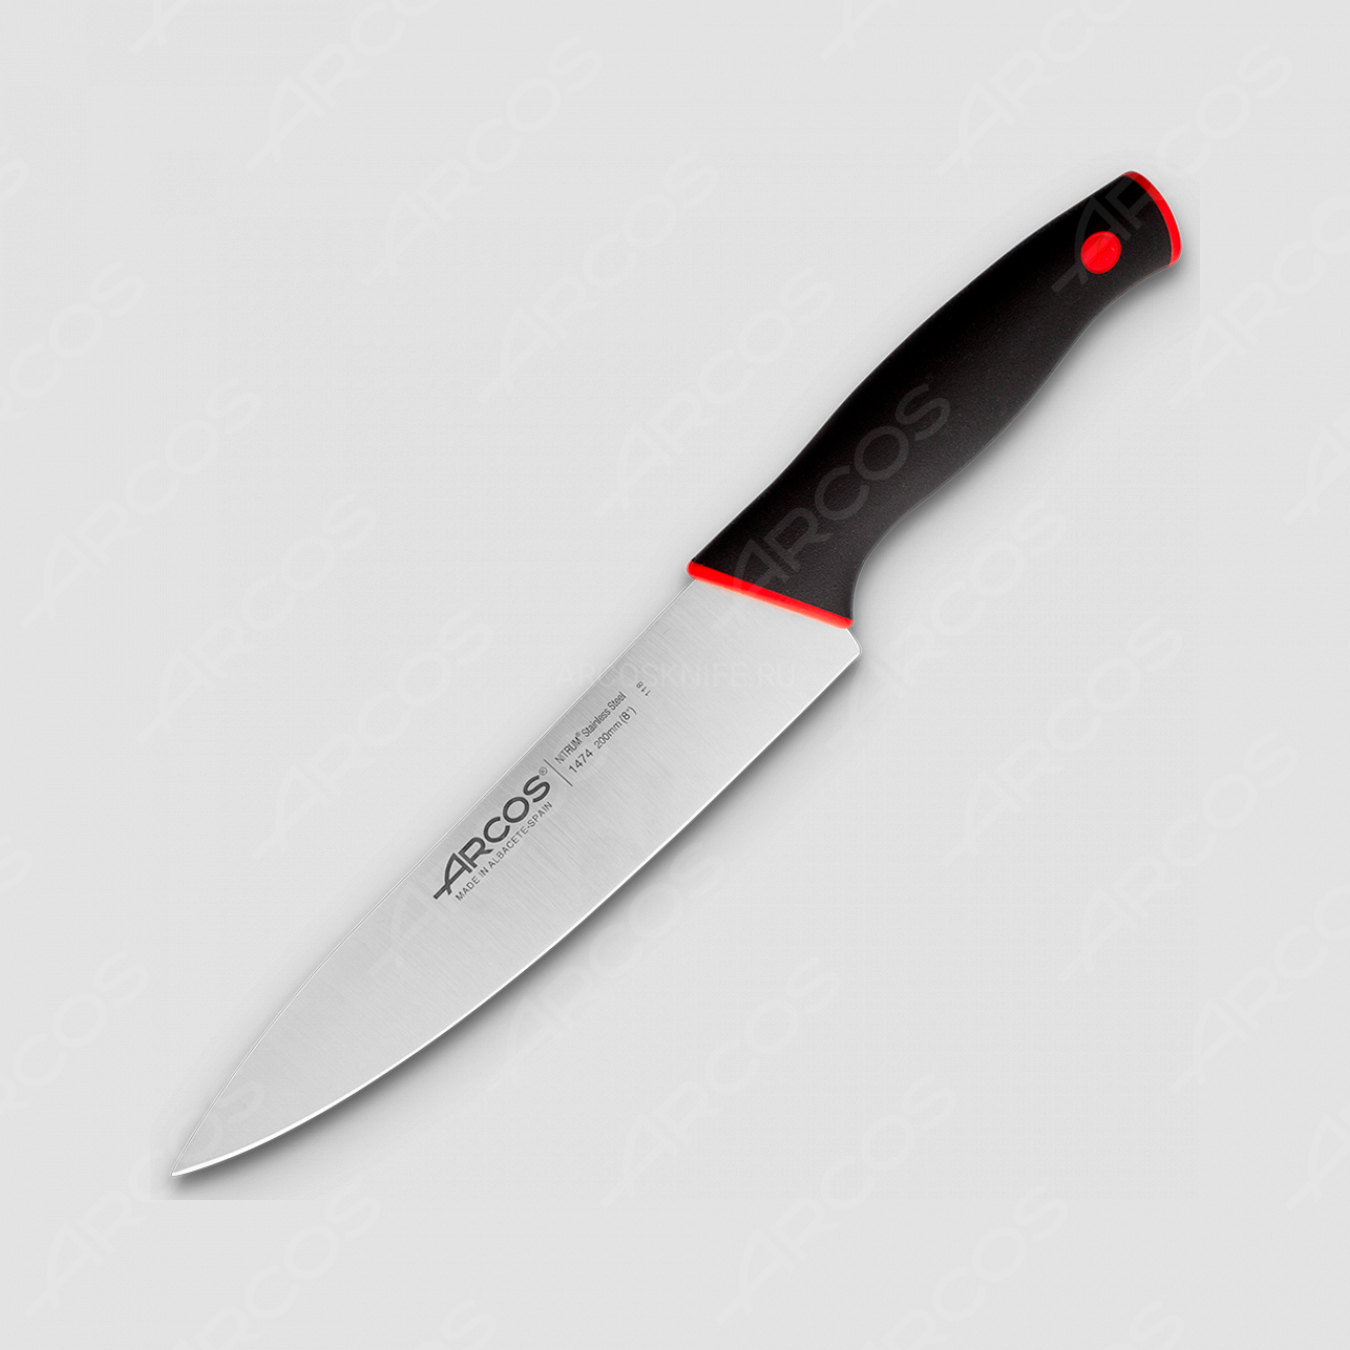 Профессиональный поварской кухонный нож 20 см, серия Duo, ARCOS, Испания